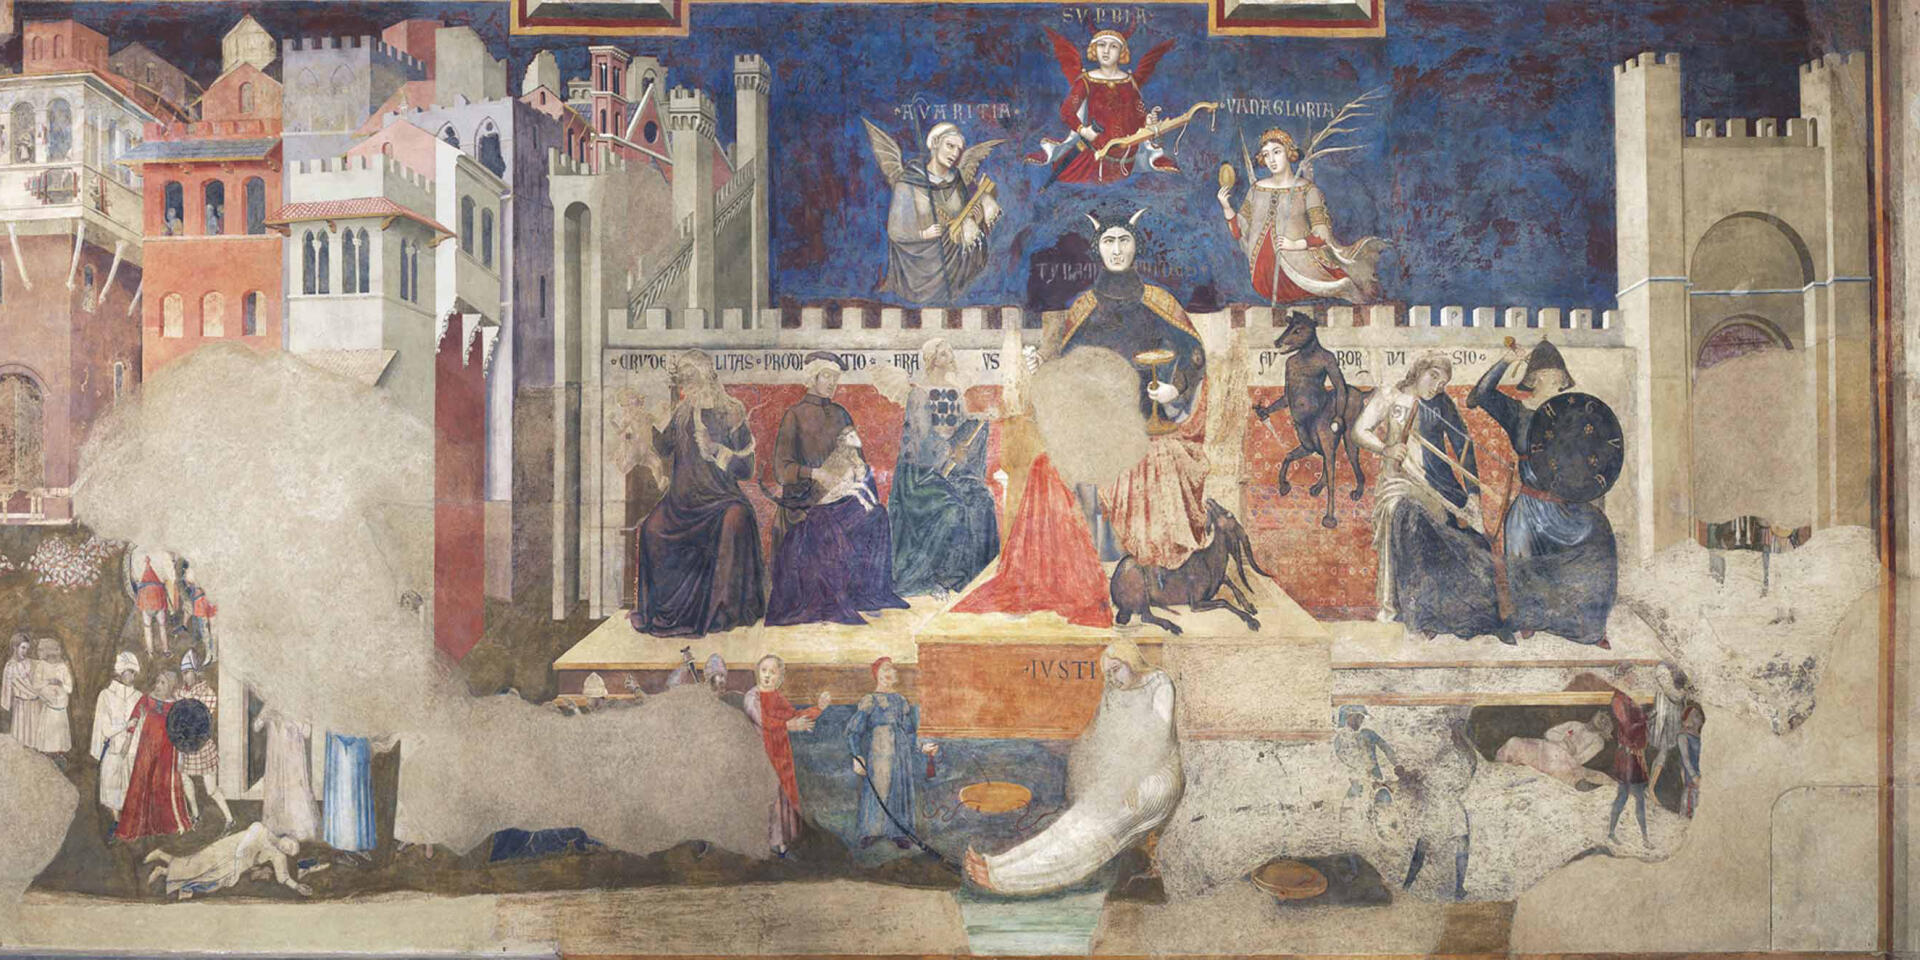 La paroi ouest de la fresque « Allégorie et effets du Bon et du Mauvais Gouvernement » (1338-1339), d’Ambrogio Lorenzetti, décrit les effets du mauvais gouvernement et son allégorie.